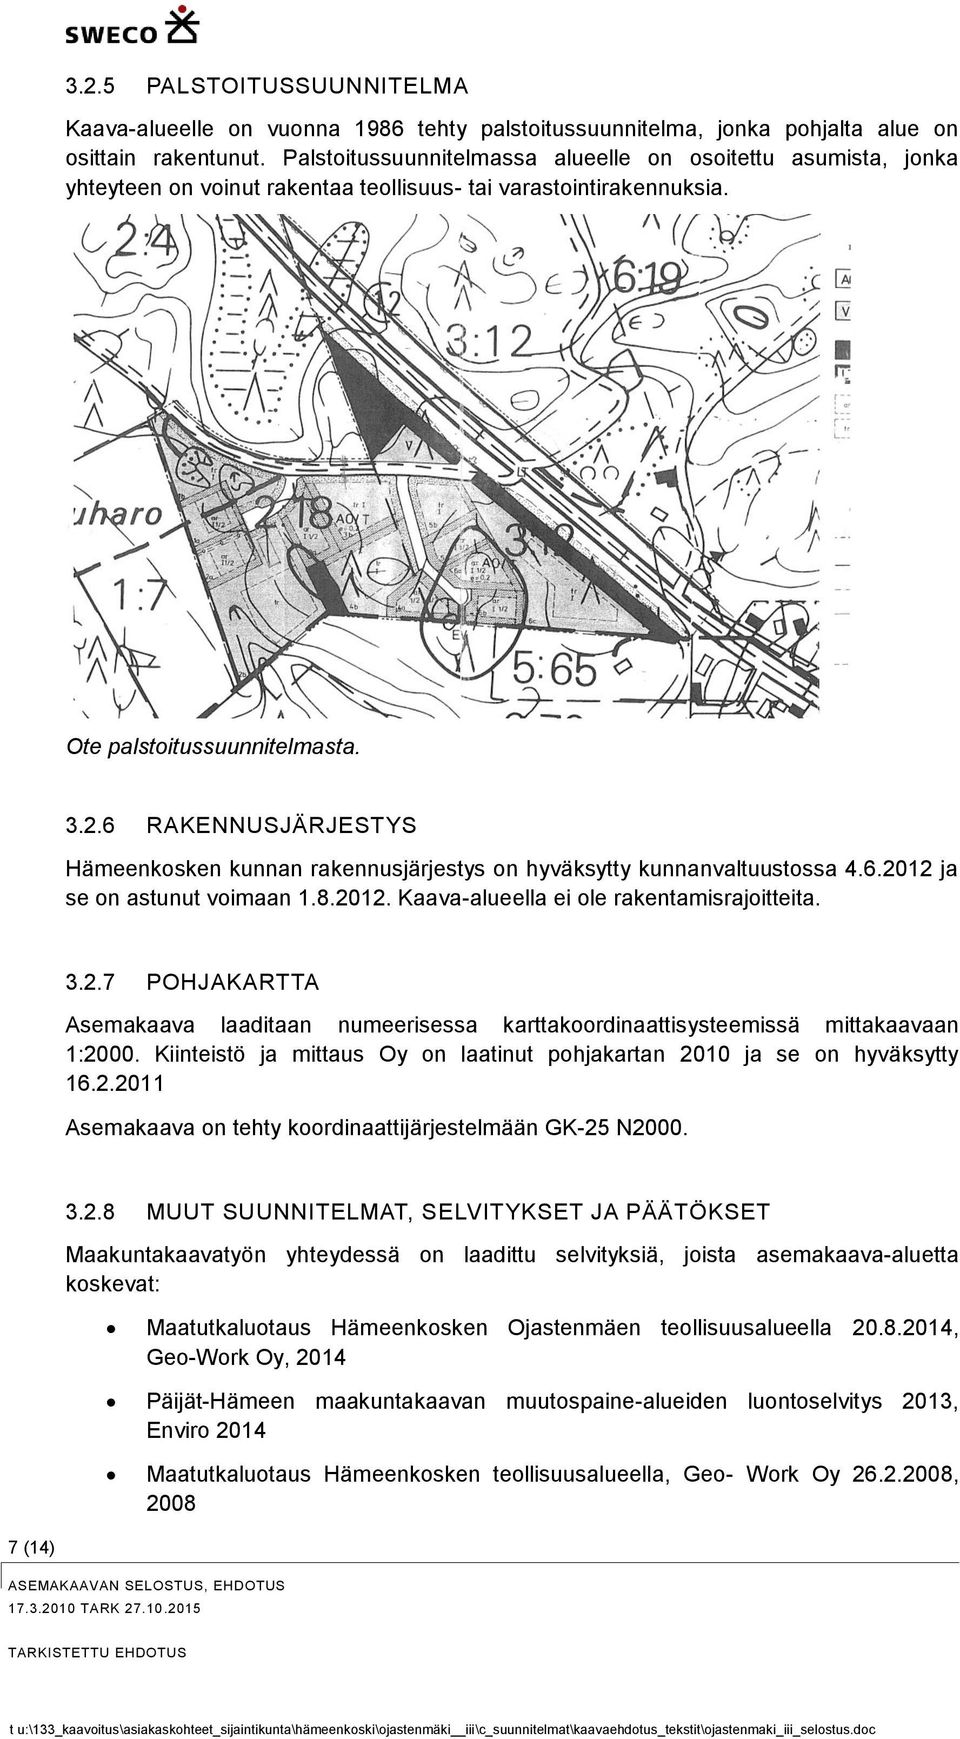 6 RAKENNUSJÄRJESTYS Hämeenkosken kunnan rakennusjärjestys on hyväksytty kunnanvaltuustossa 4.6.2012 ja se on astunut voimaan 1.8.2012. Kaava-alueella ei ole rakentamisrajoitteita. 3.2.7 POHJAKARTTA Asemakaava laaditaan numeerisessa karttakoordinaattisysteemissä mittakaavaan 1:2000.